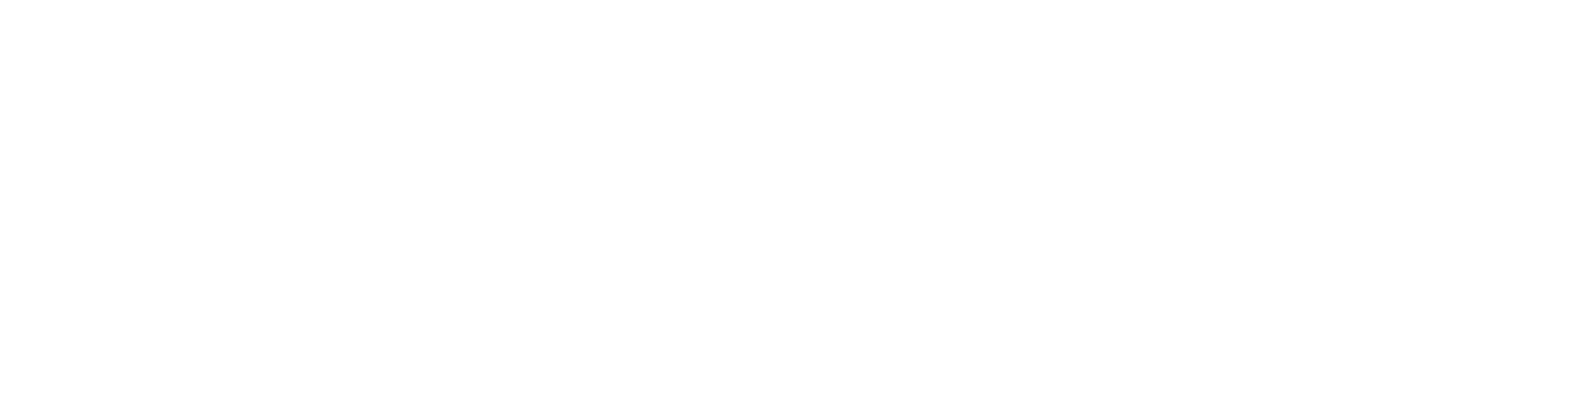 Allianz logo grand pour les fonds sombres (PNG transparent)